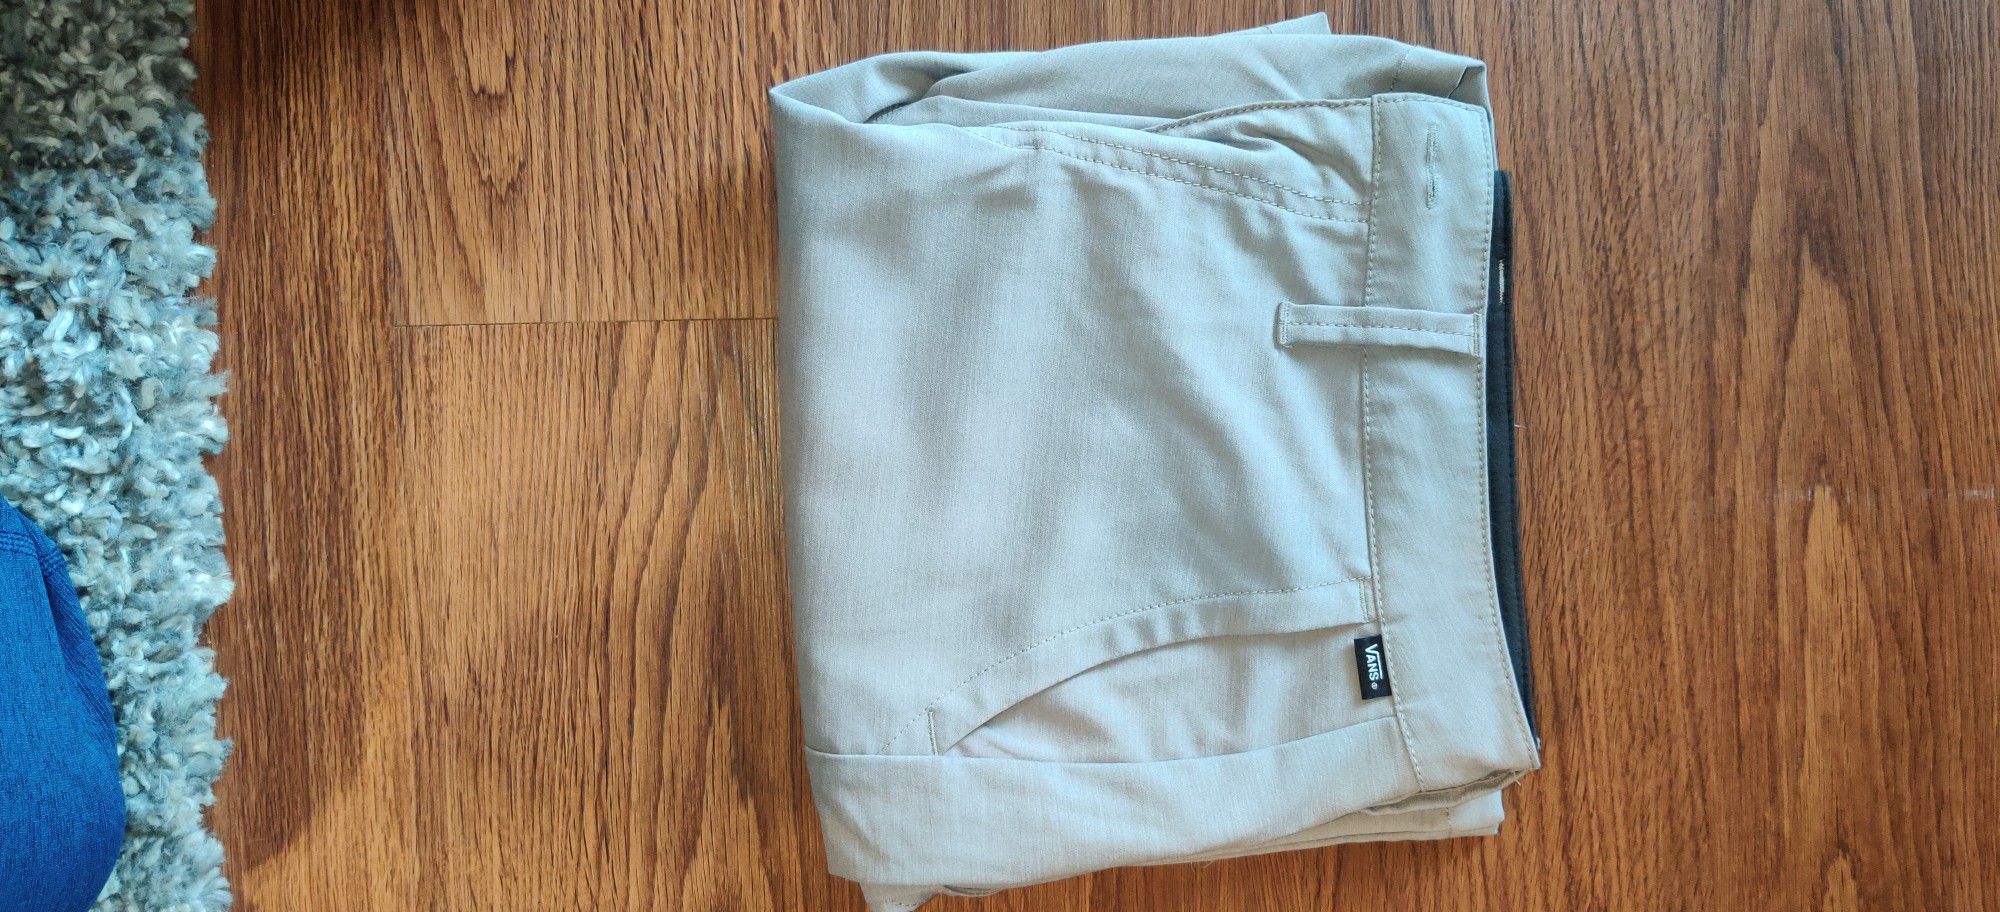 Van's Shorts (Men's Size 30)